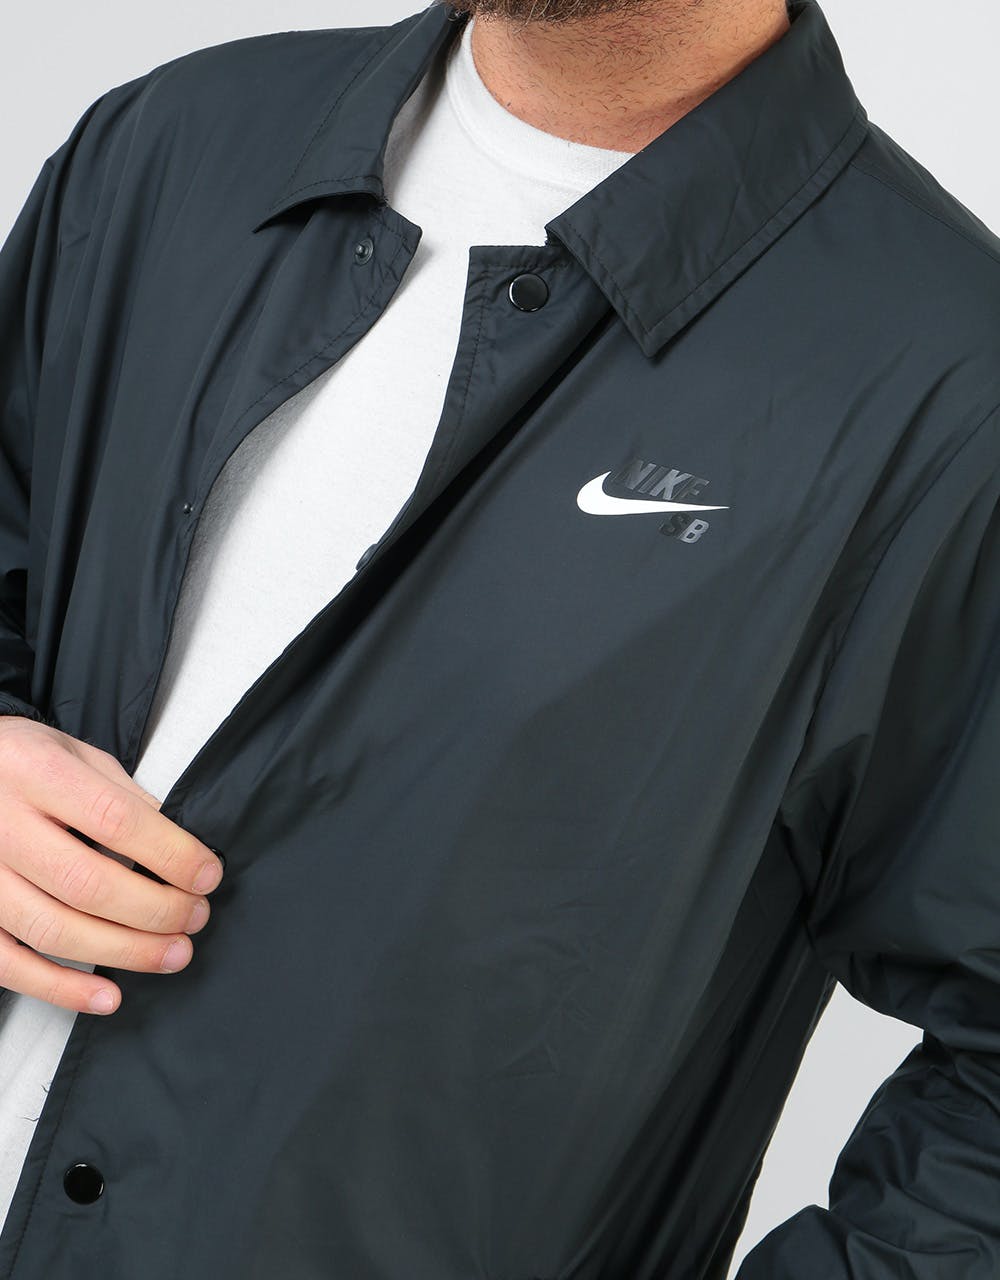 Nike SB Sheild Coaches Jacket - Black/White